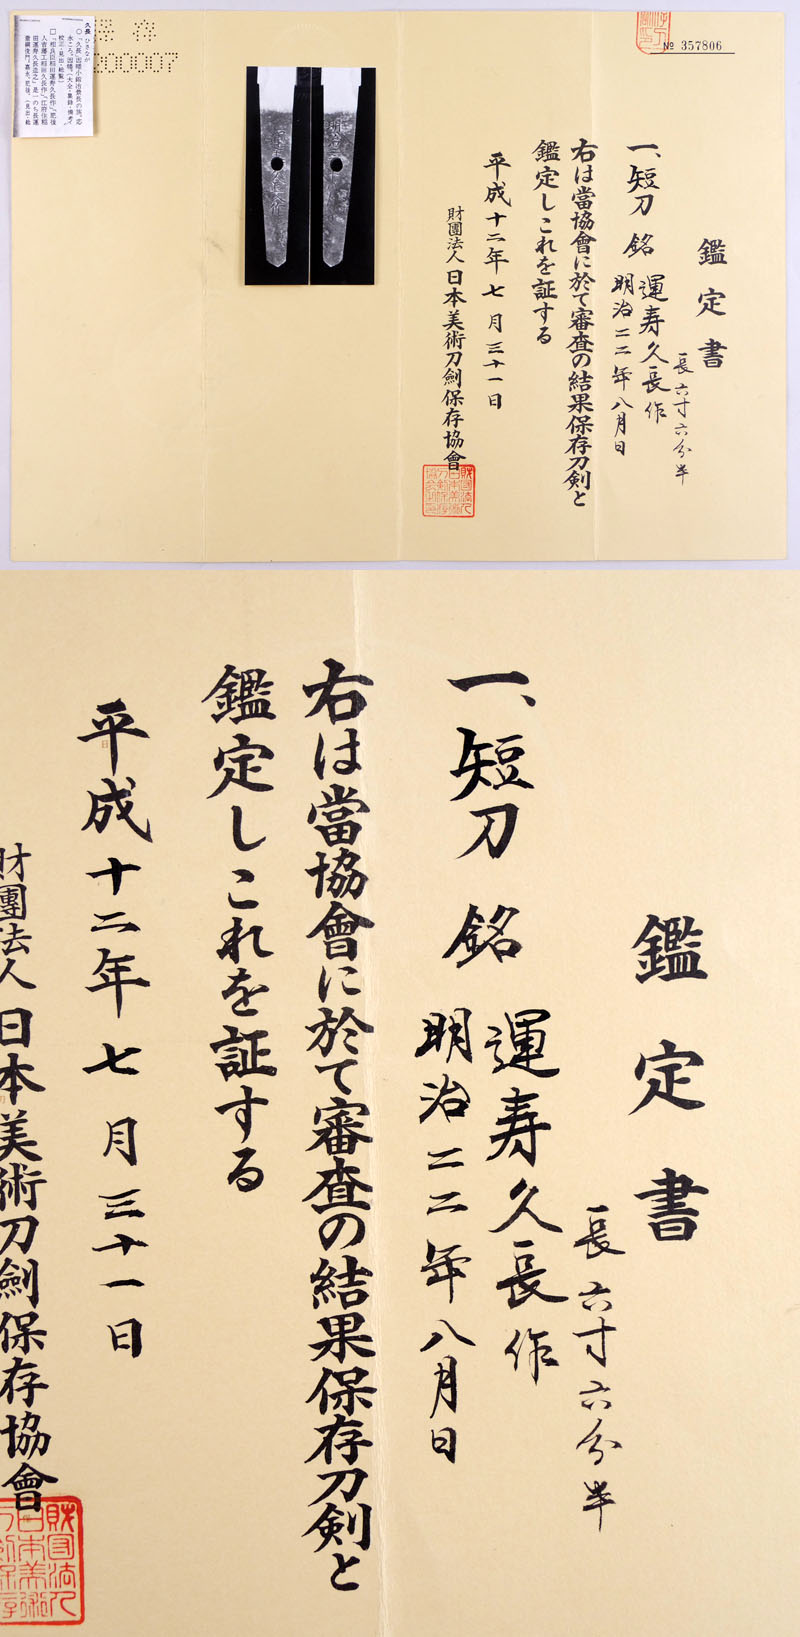 運寿久長作（稲田運寿久長） Picture of Certificate